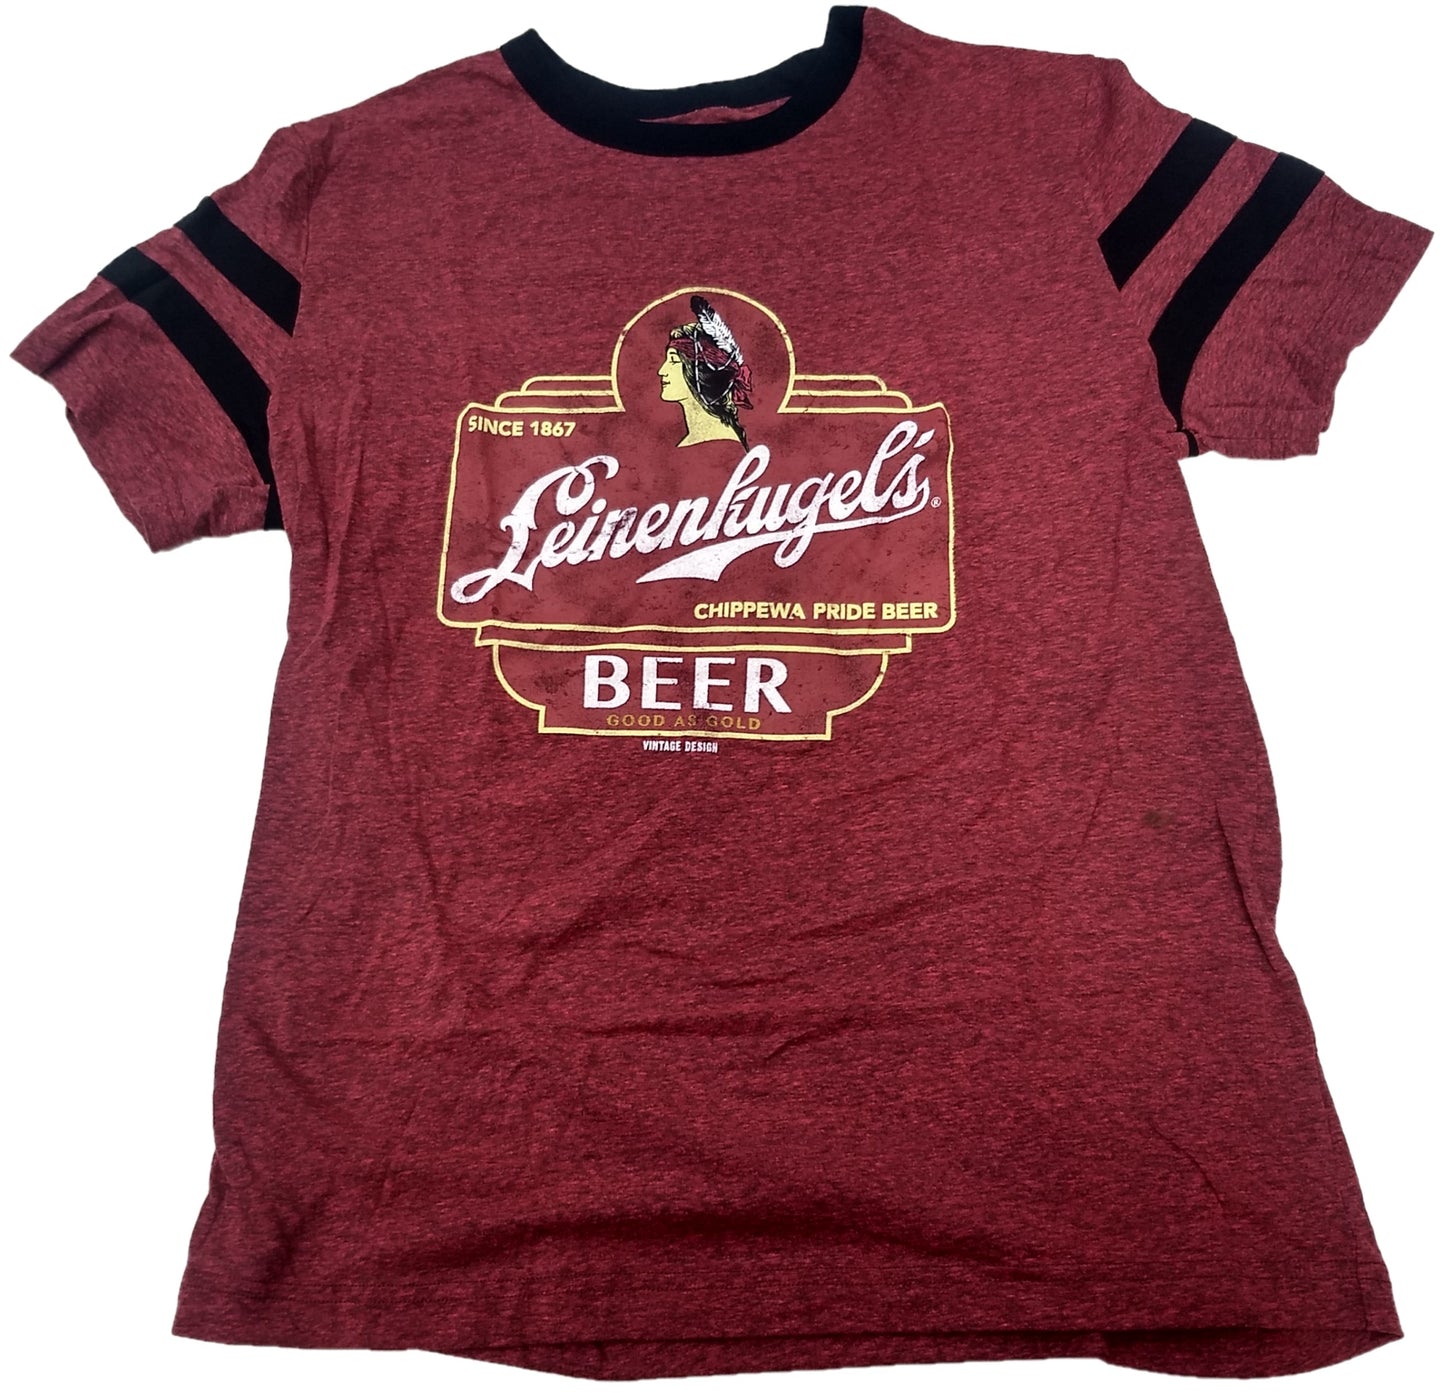 Leinenkugel's Chippewa Pride Beer 1867 Vintage Mens T-Shirt